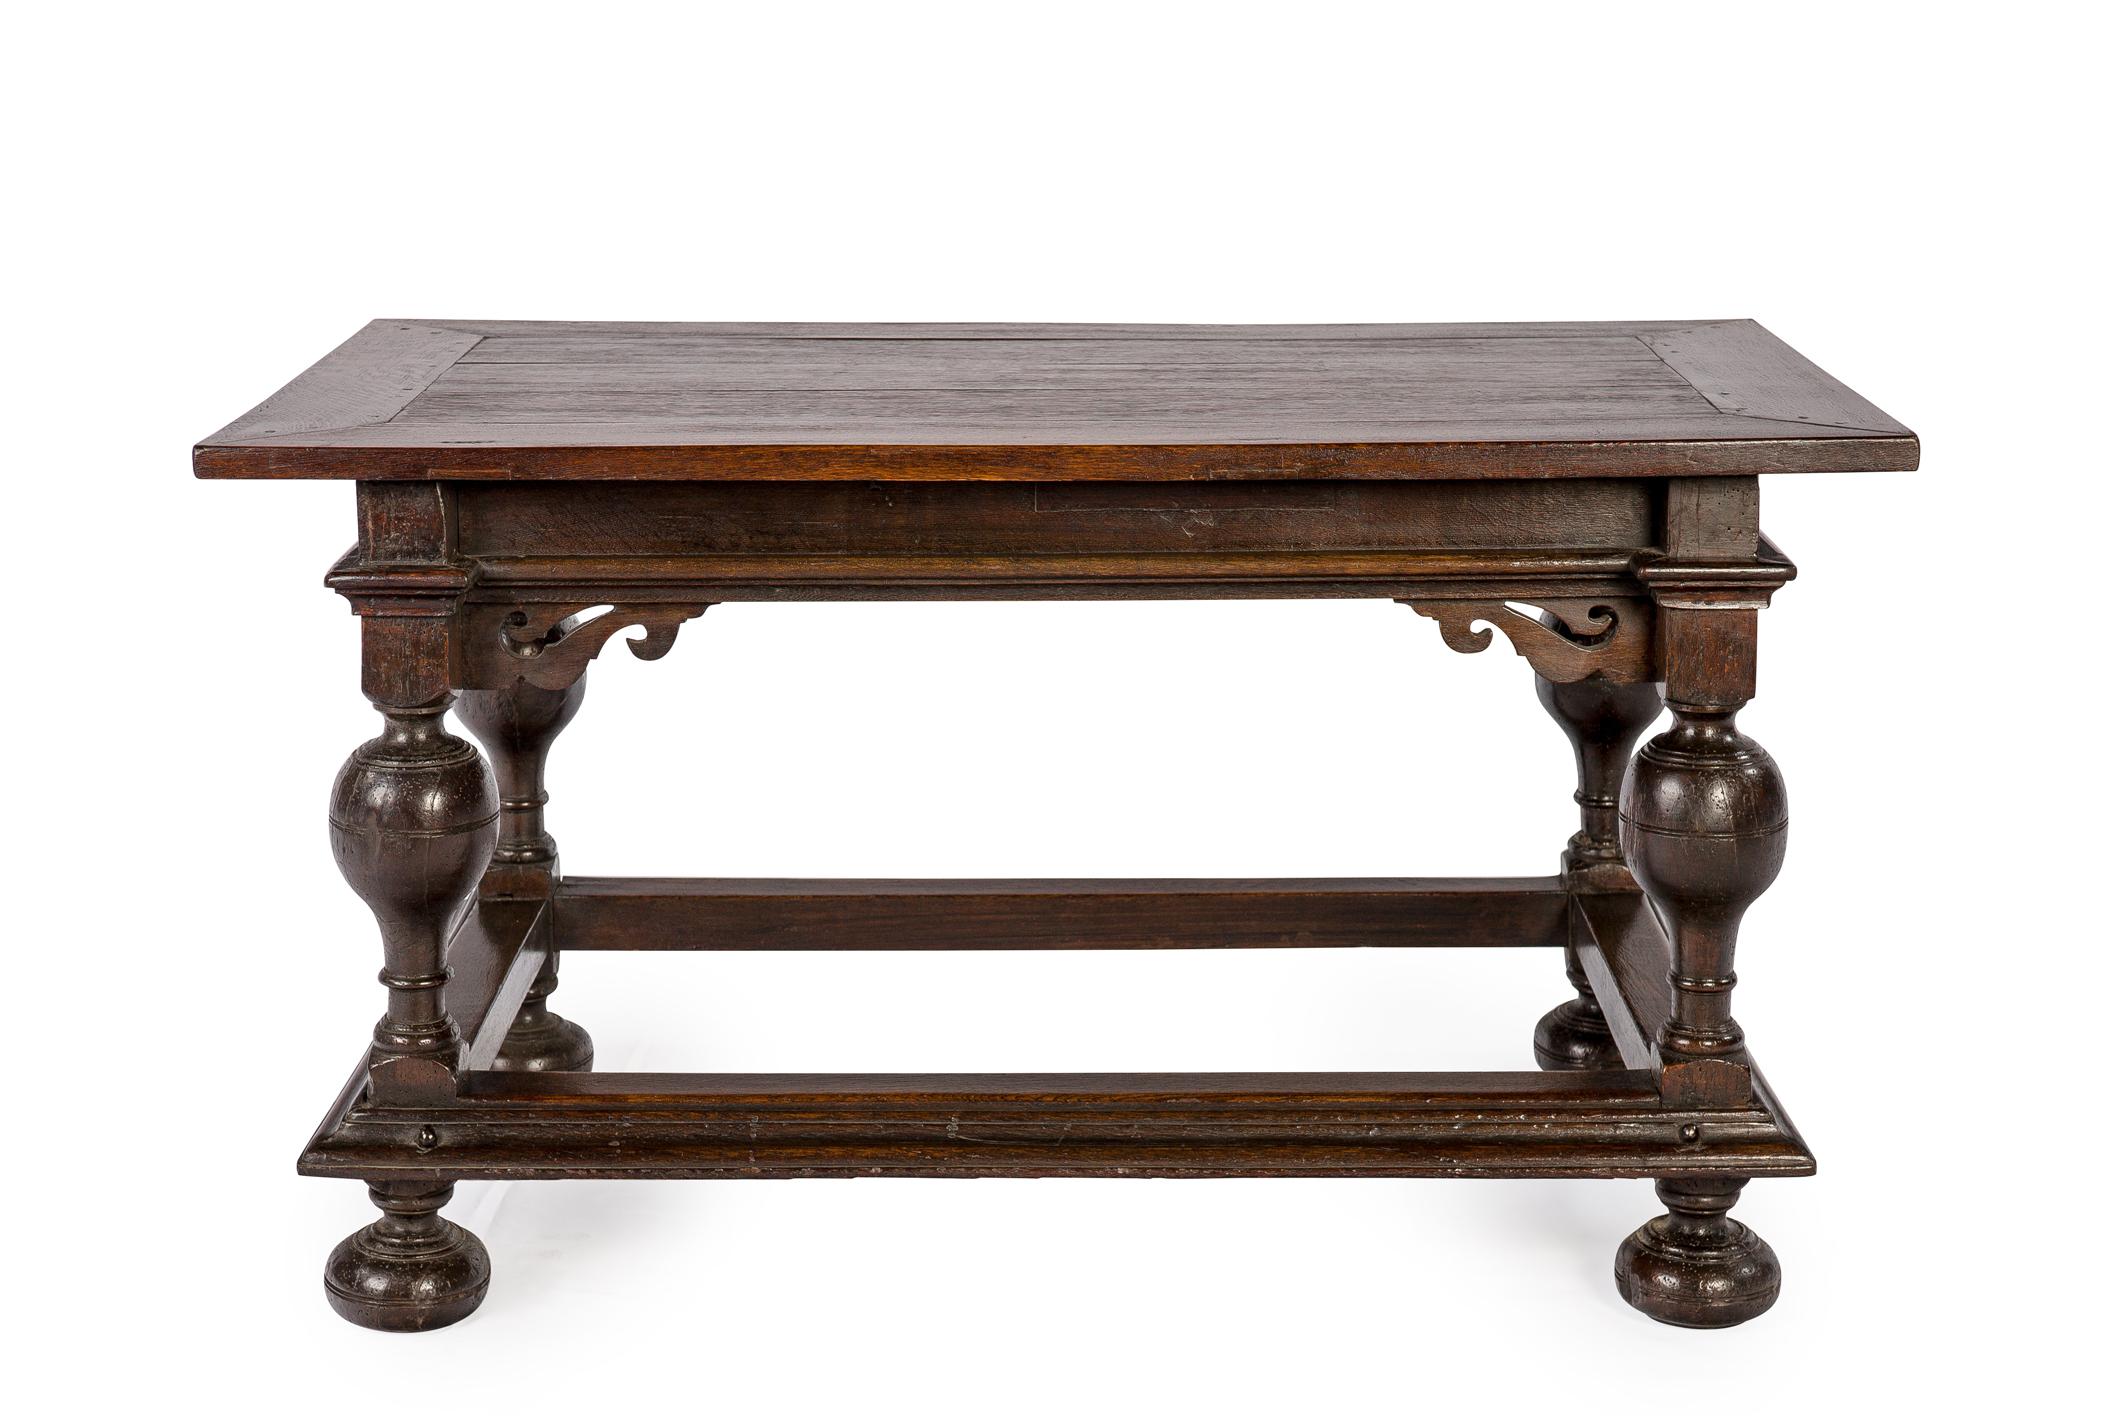 Cette belle table renaissance est fabriquée en chêne d'été européen massif de la plus haute qualité aux Pays-Bas vers 1680. Il s'agit d'une table renaissance néerlandaise typique (appelée bolpoottafel) avec ses pieds tournés et son tablier sculpté.